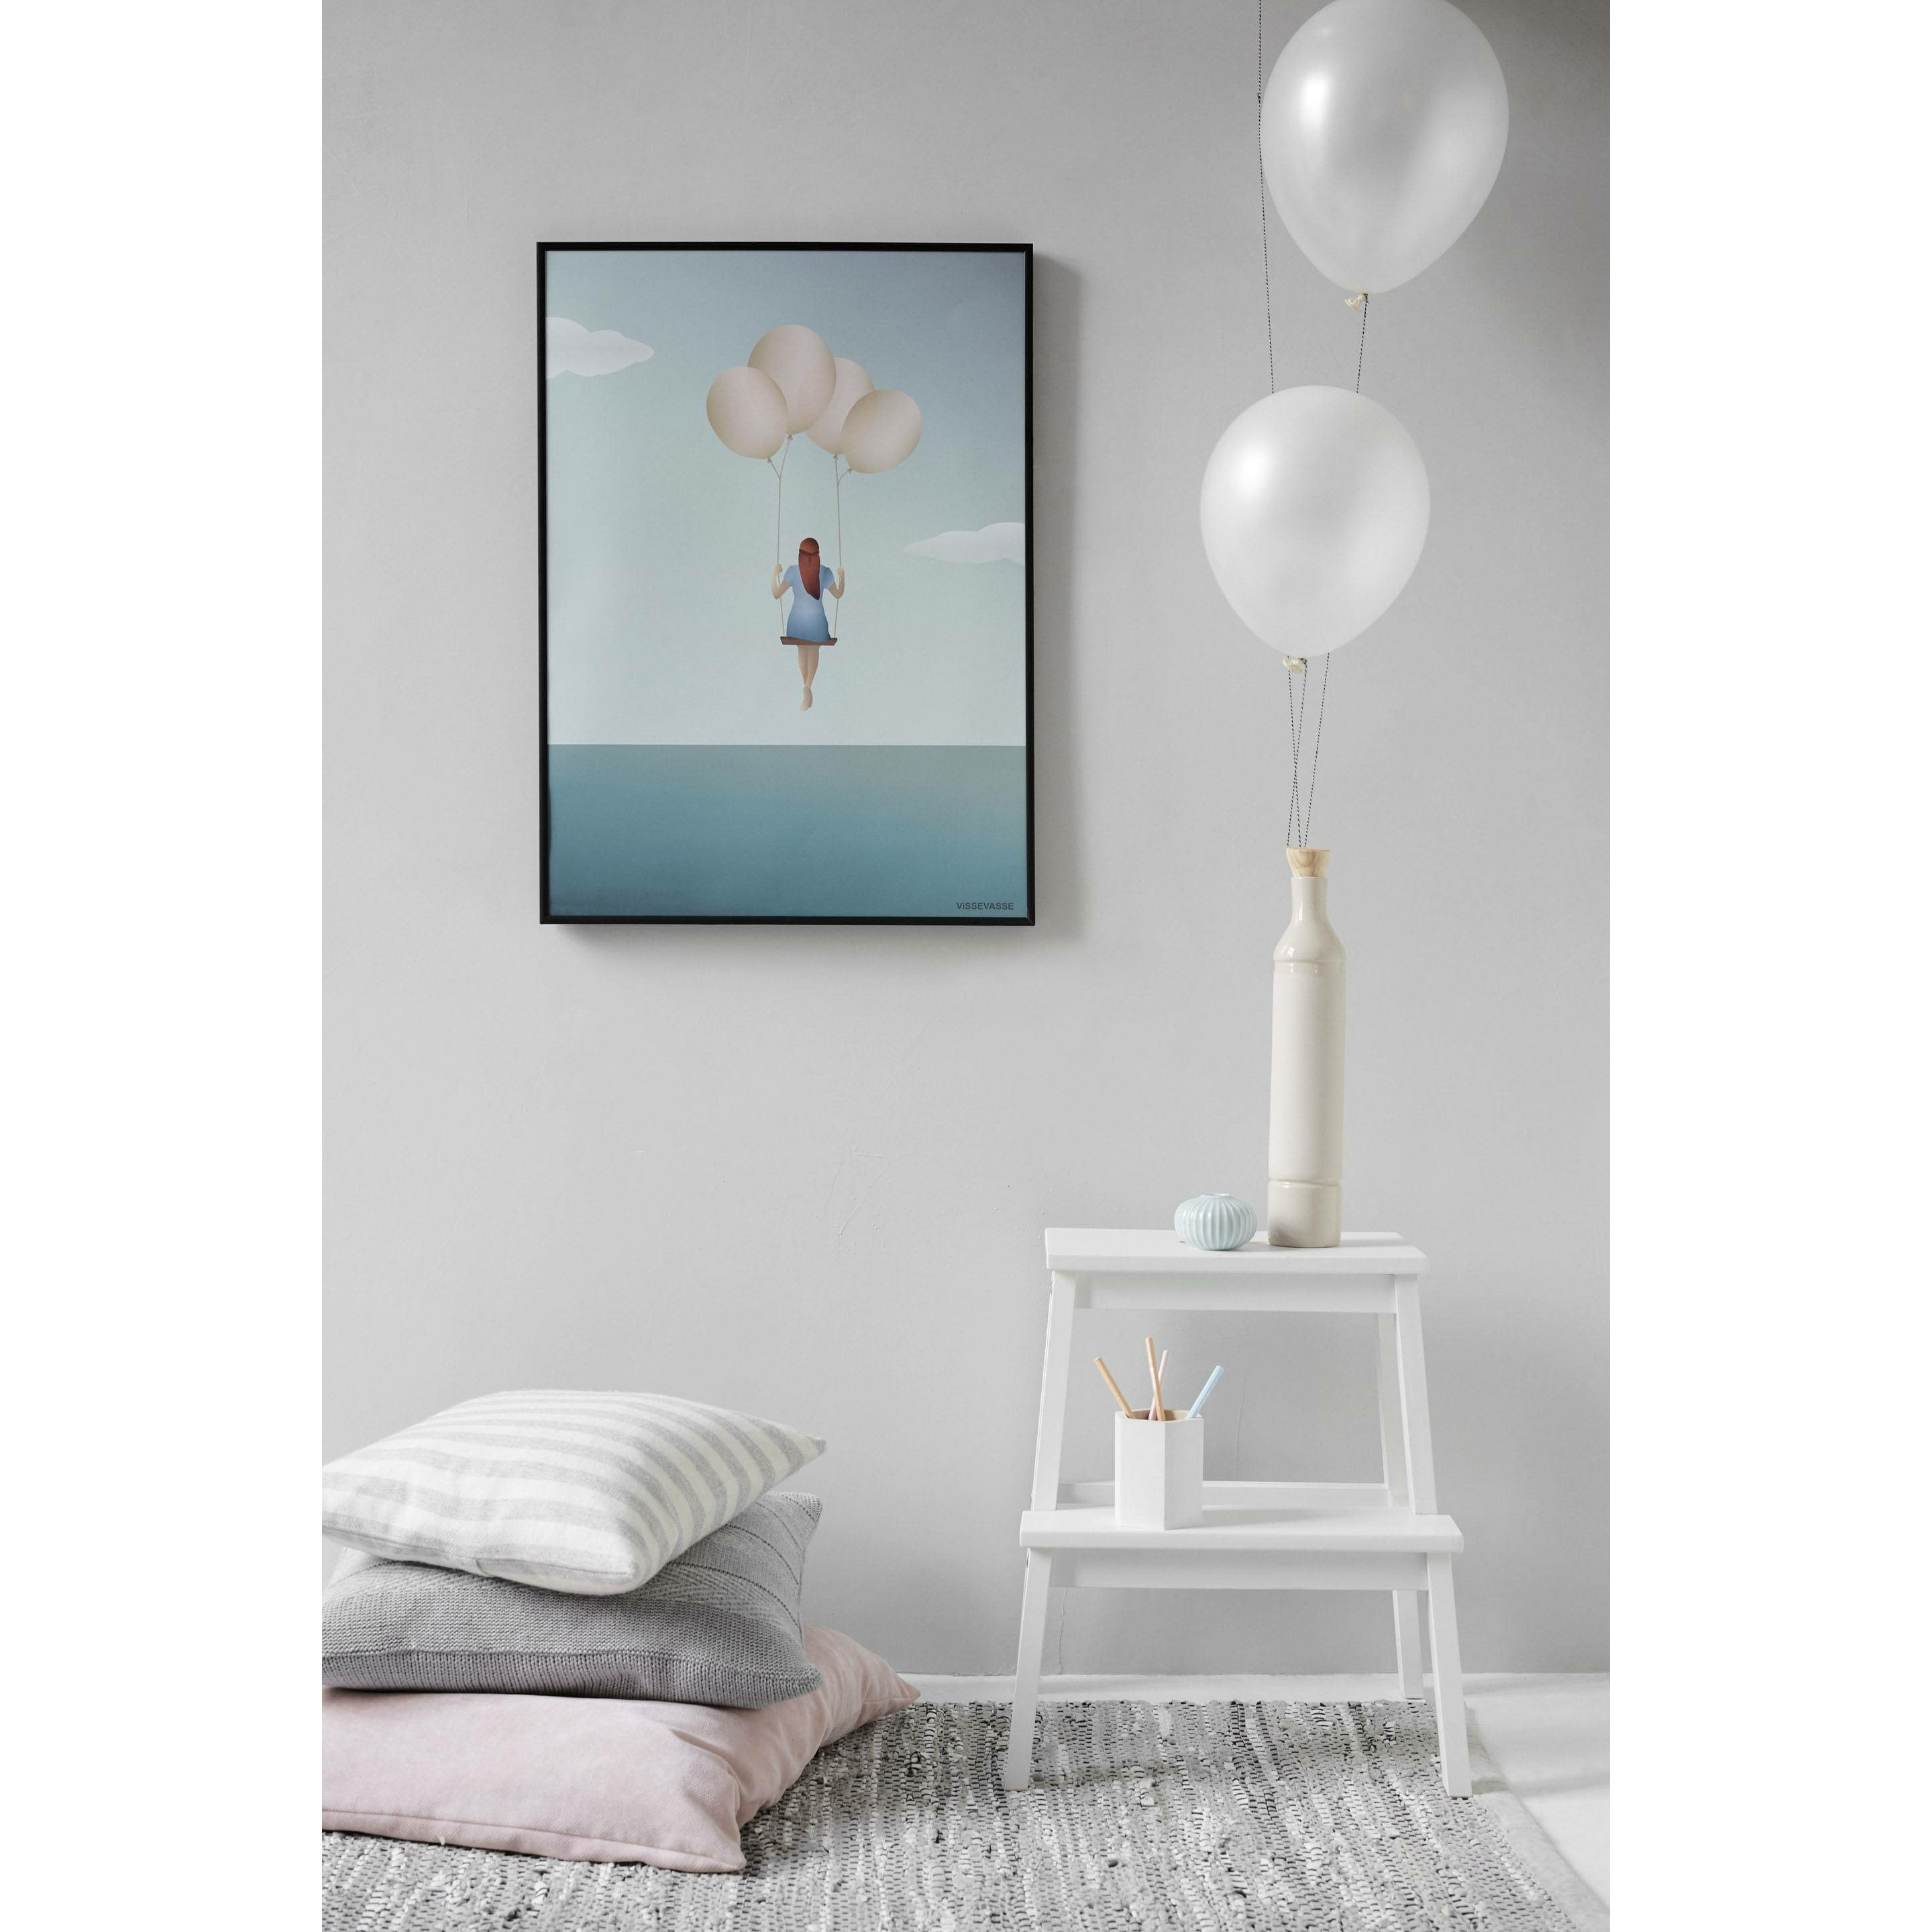 Vissevasse Balloon Dream Plakat, 70X100Cm